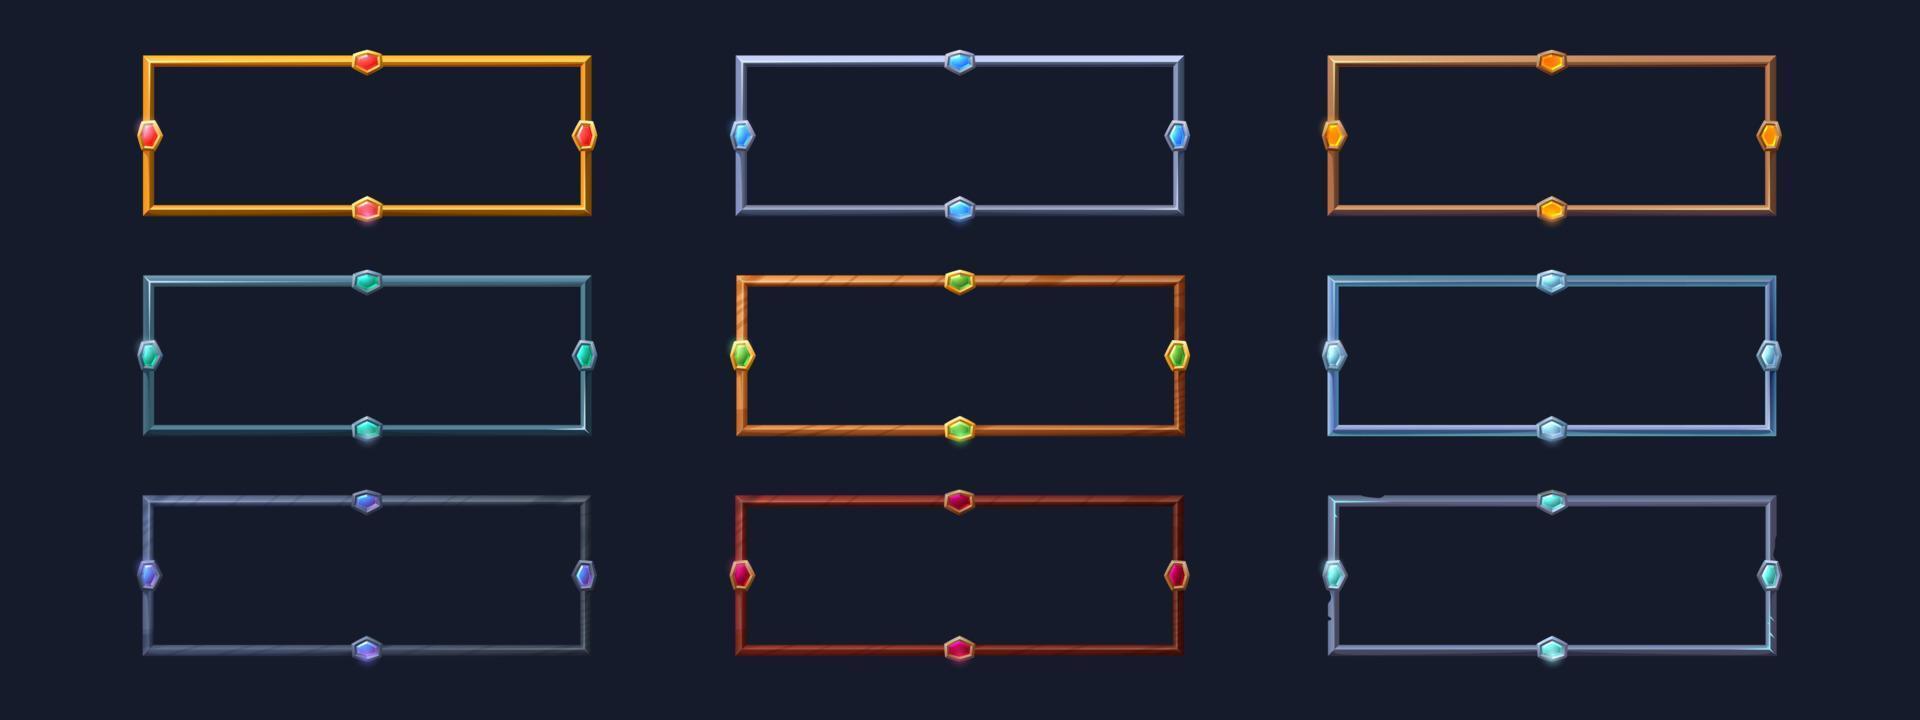 Rectangle frames for game user avatar vector